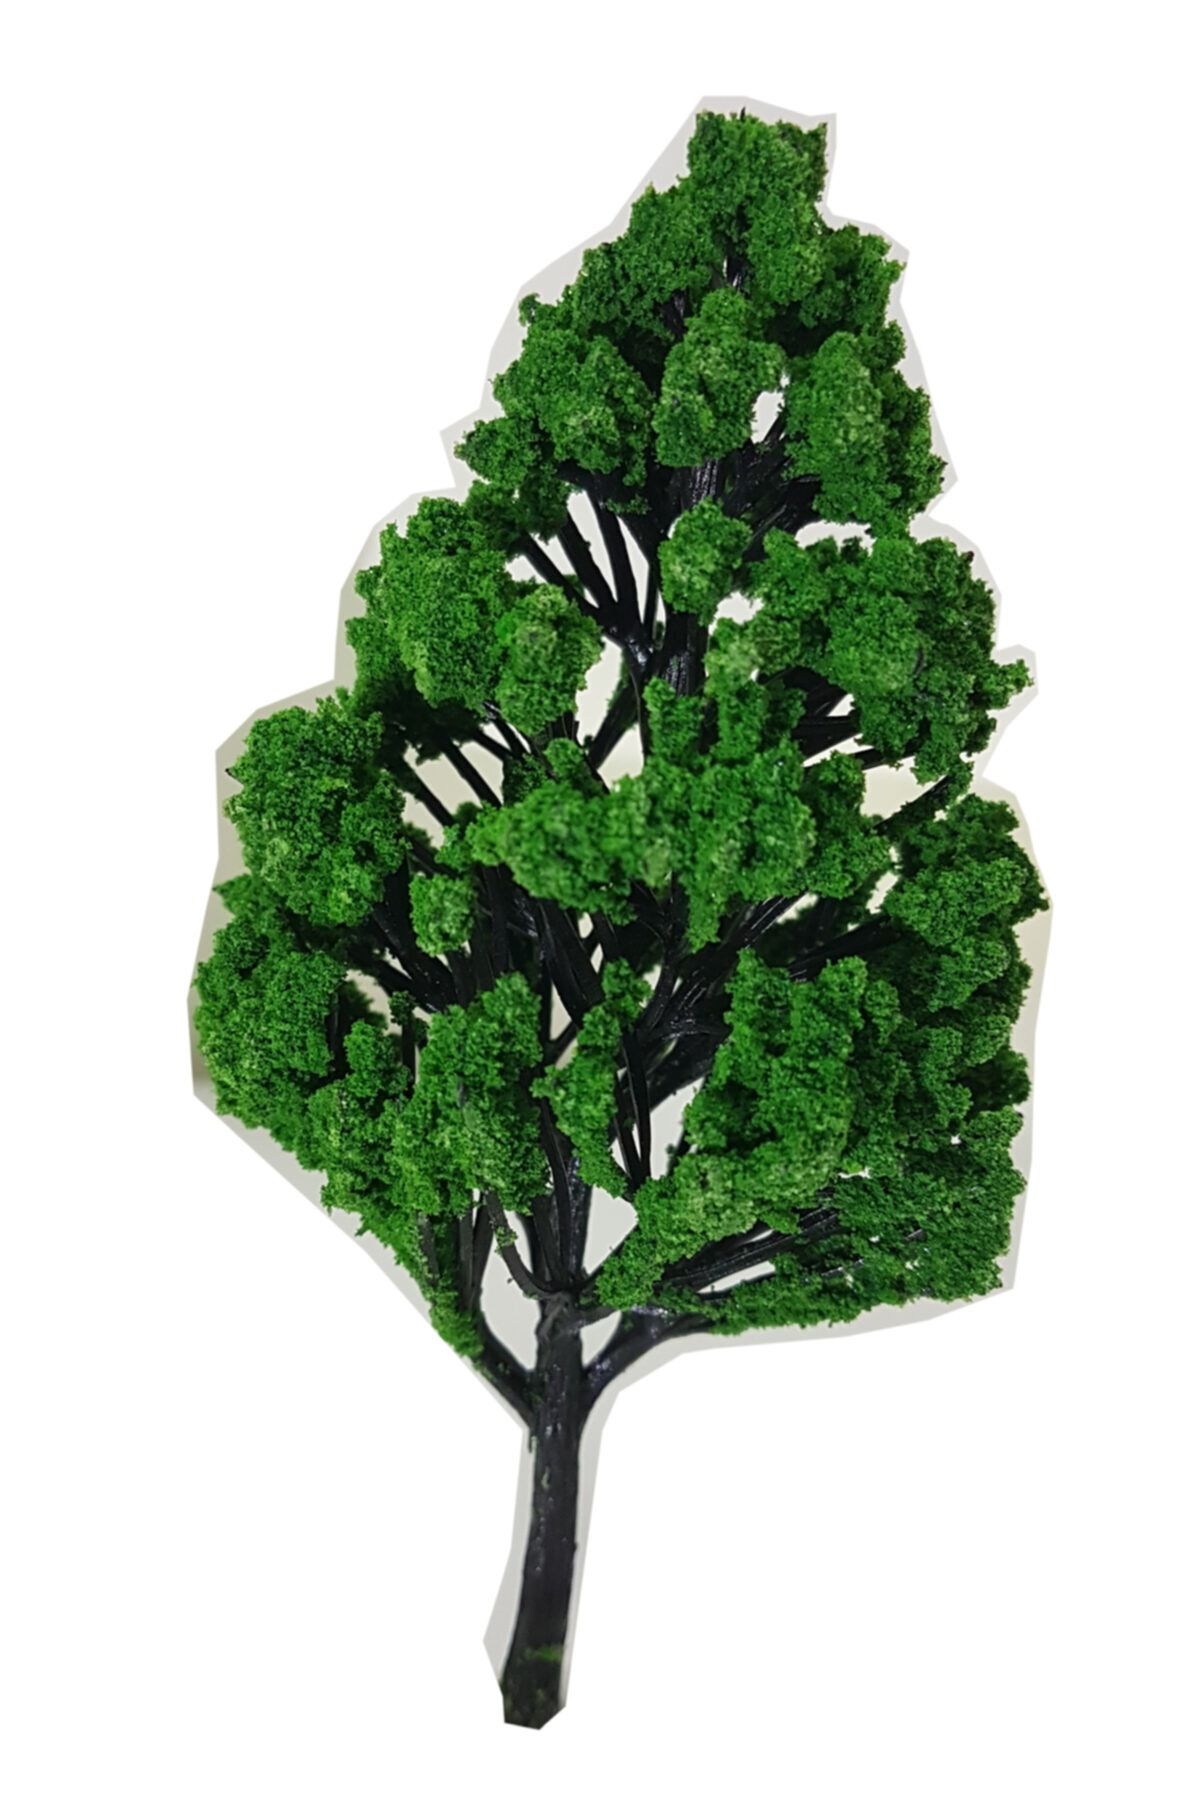 Vox Art 3'lü Maket Ağaç 1:50 Ölçek 11,5 Cm (vxa-105-11,5)